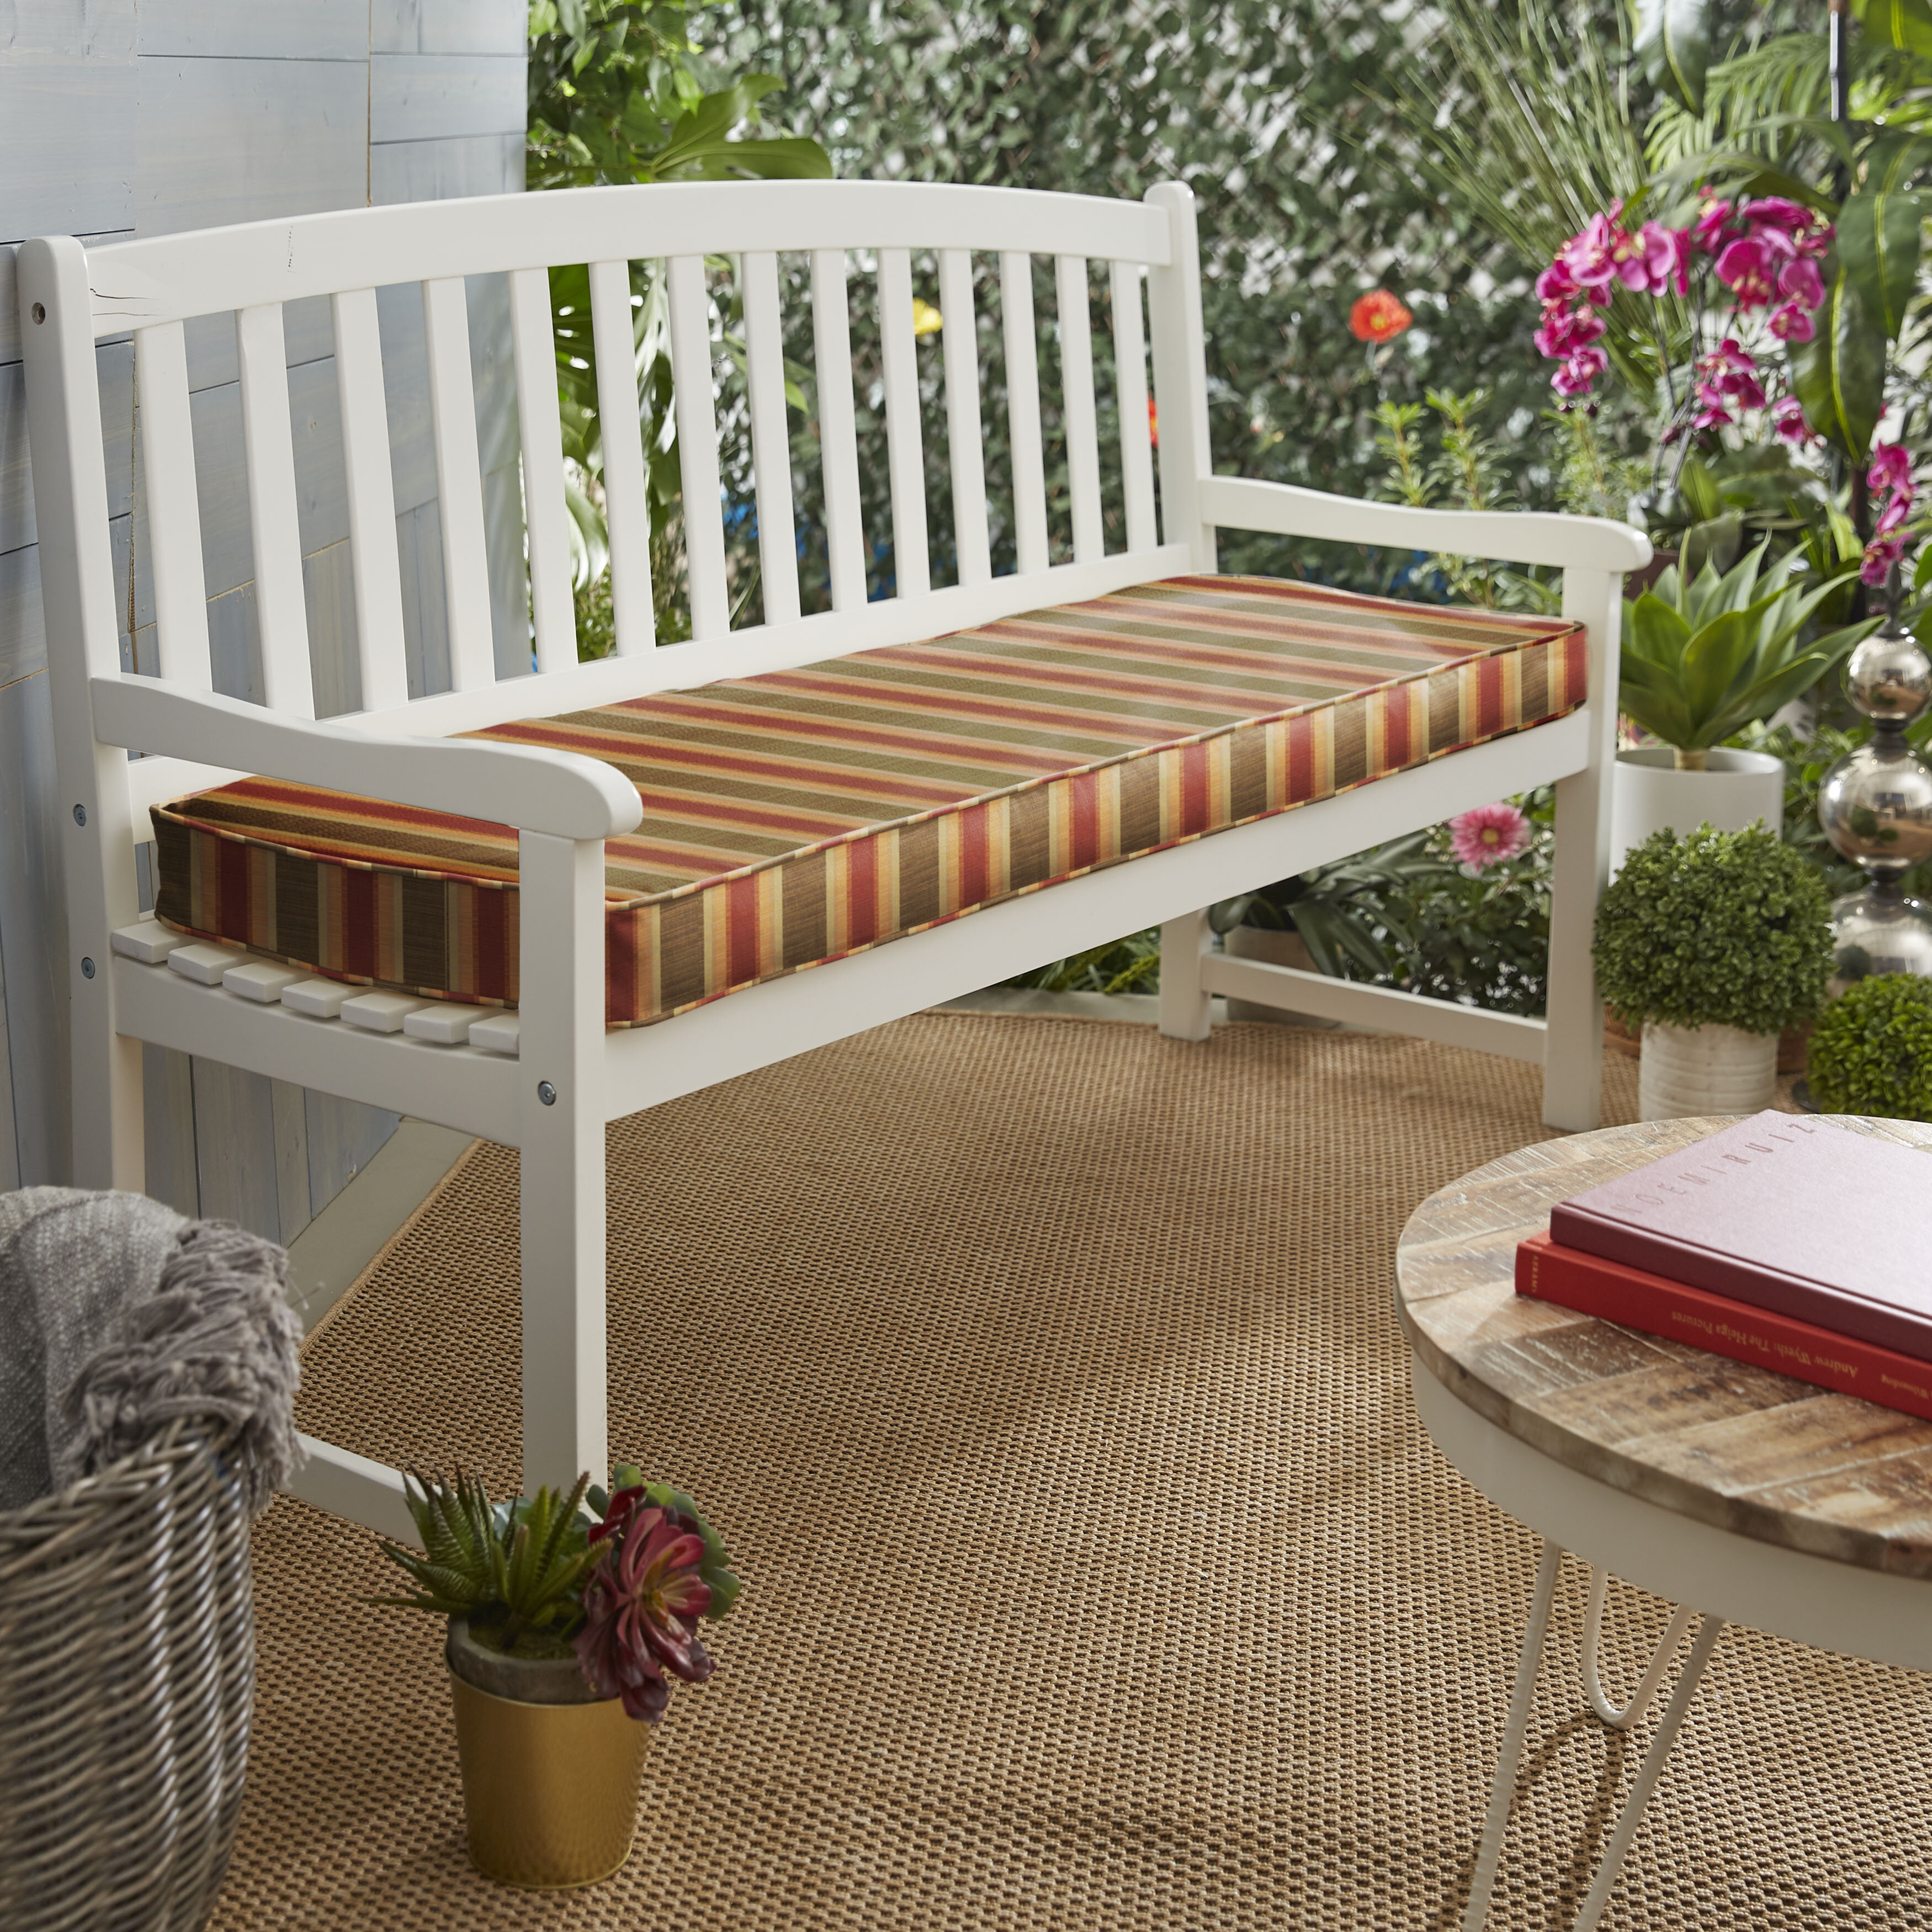 Red Barrel Studio Indoor Outdoor Sunbrella Bench Cushion Reviews Wayfair